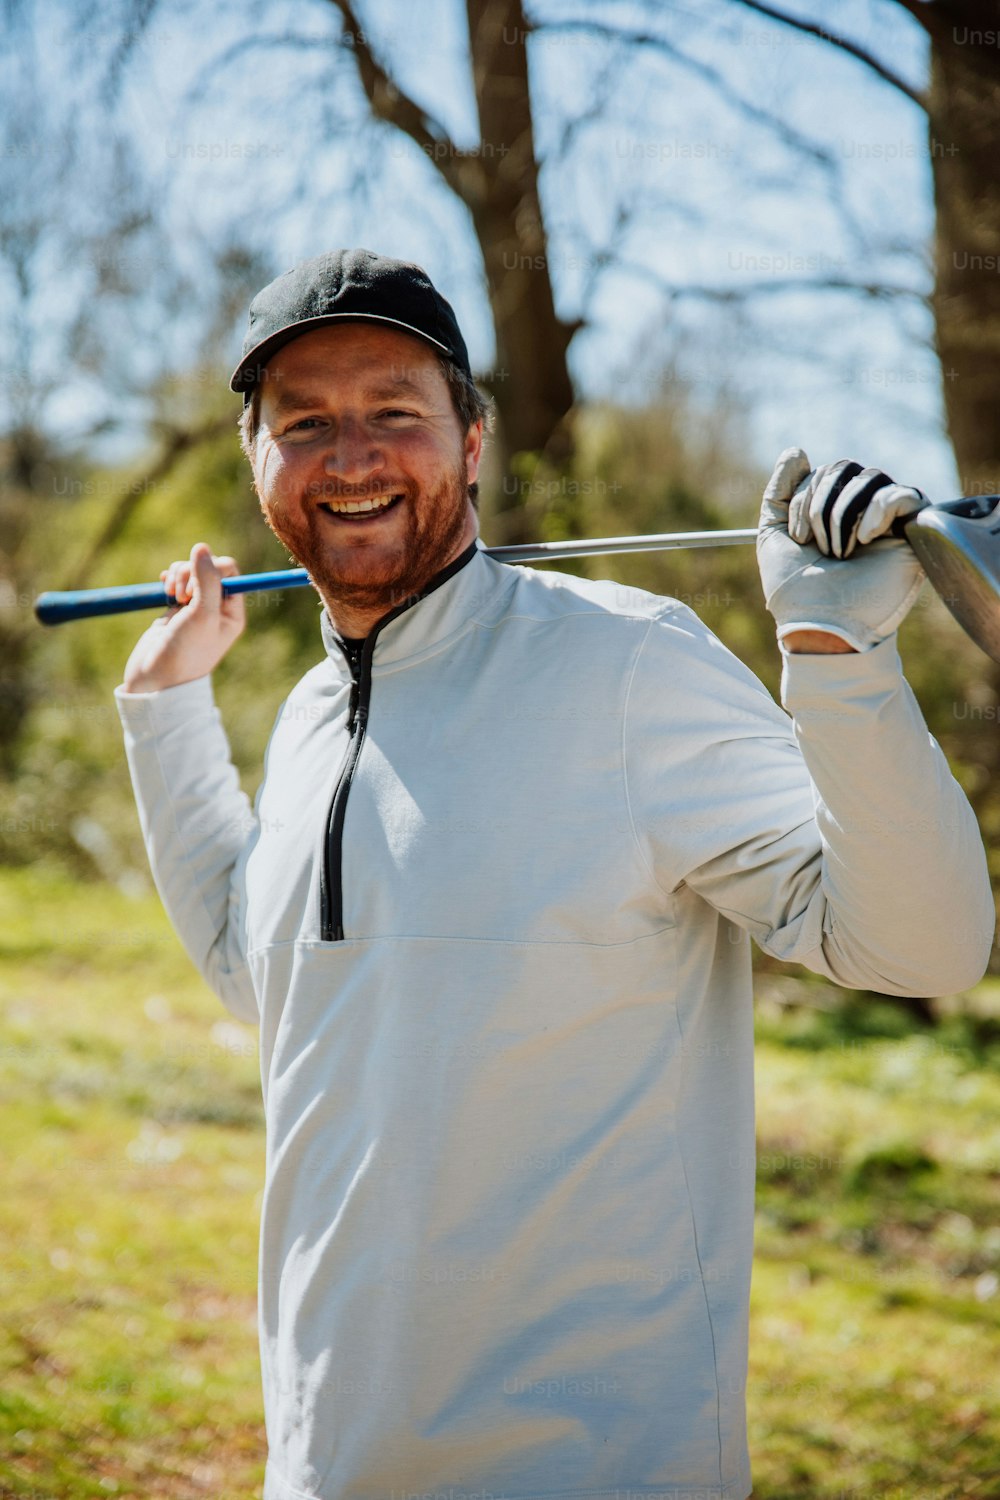 Un hombre sosteniendo un palo de golf y sonriendo